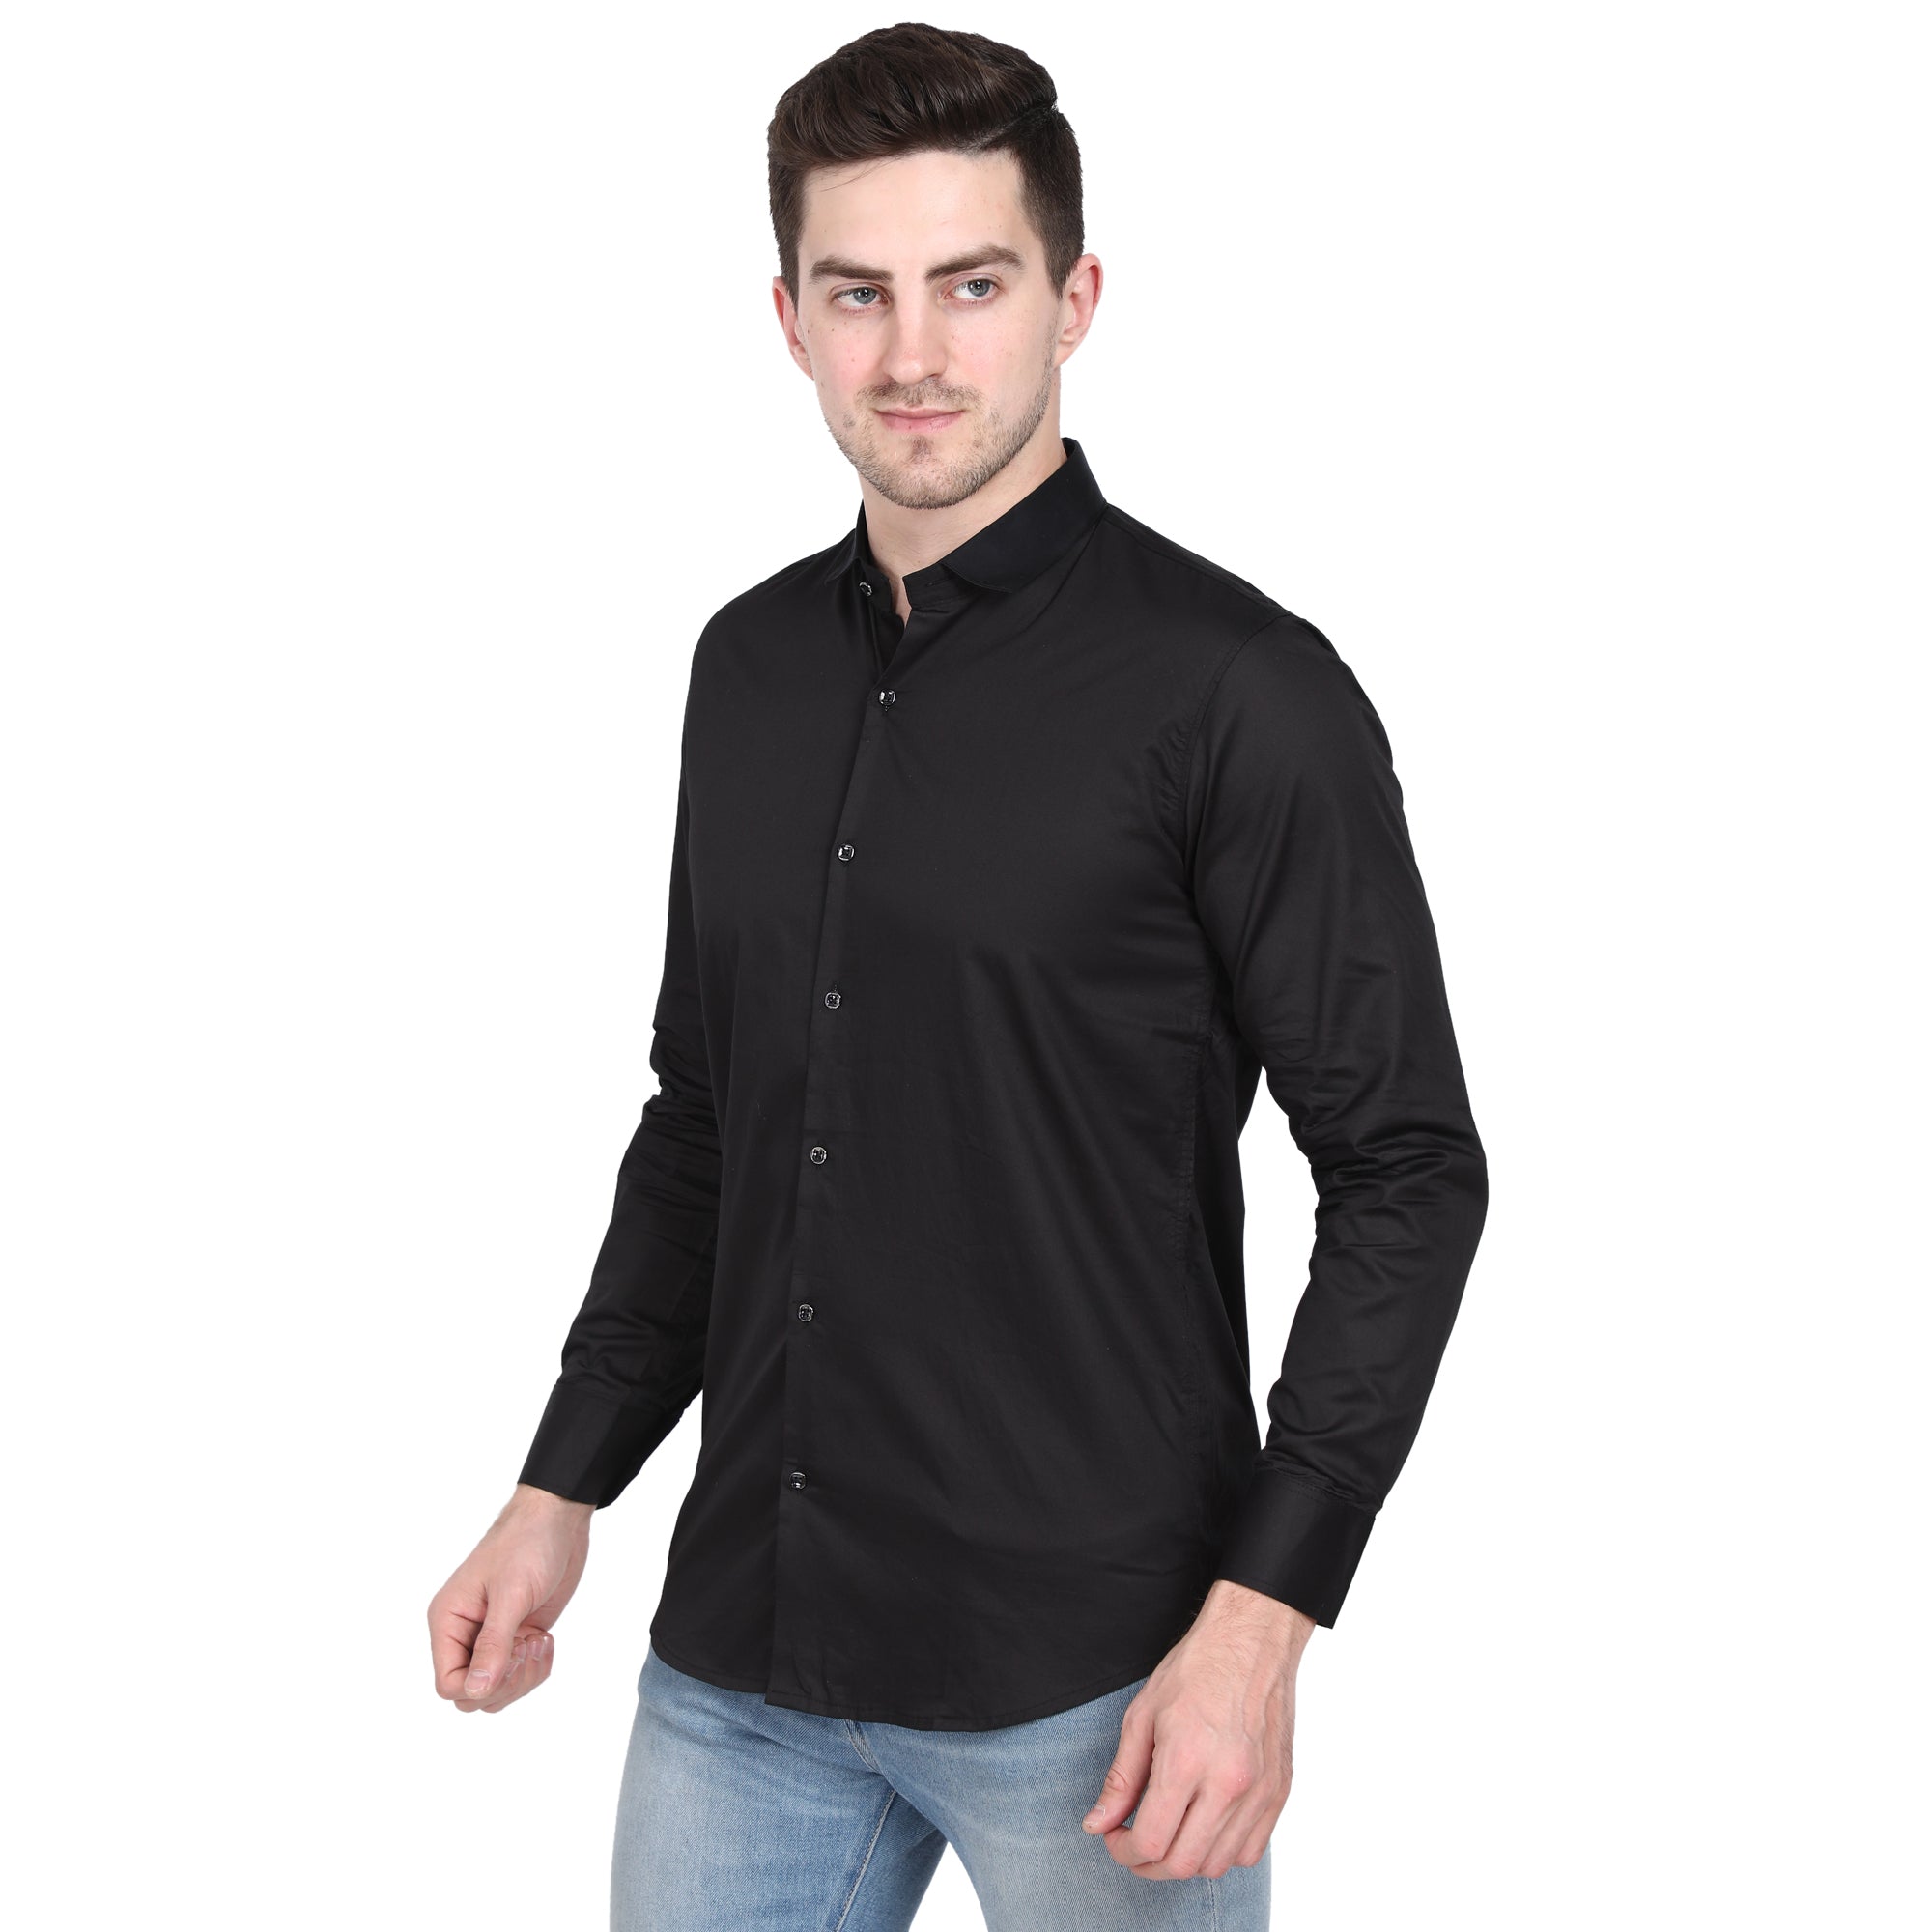 Men Casual Cotton Shirts - Black Colour